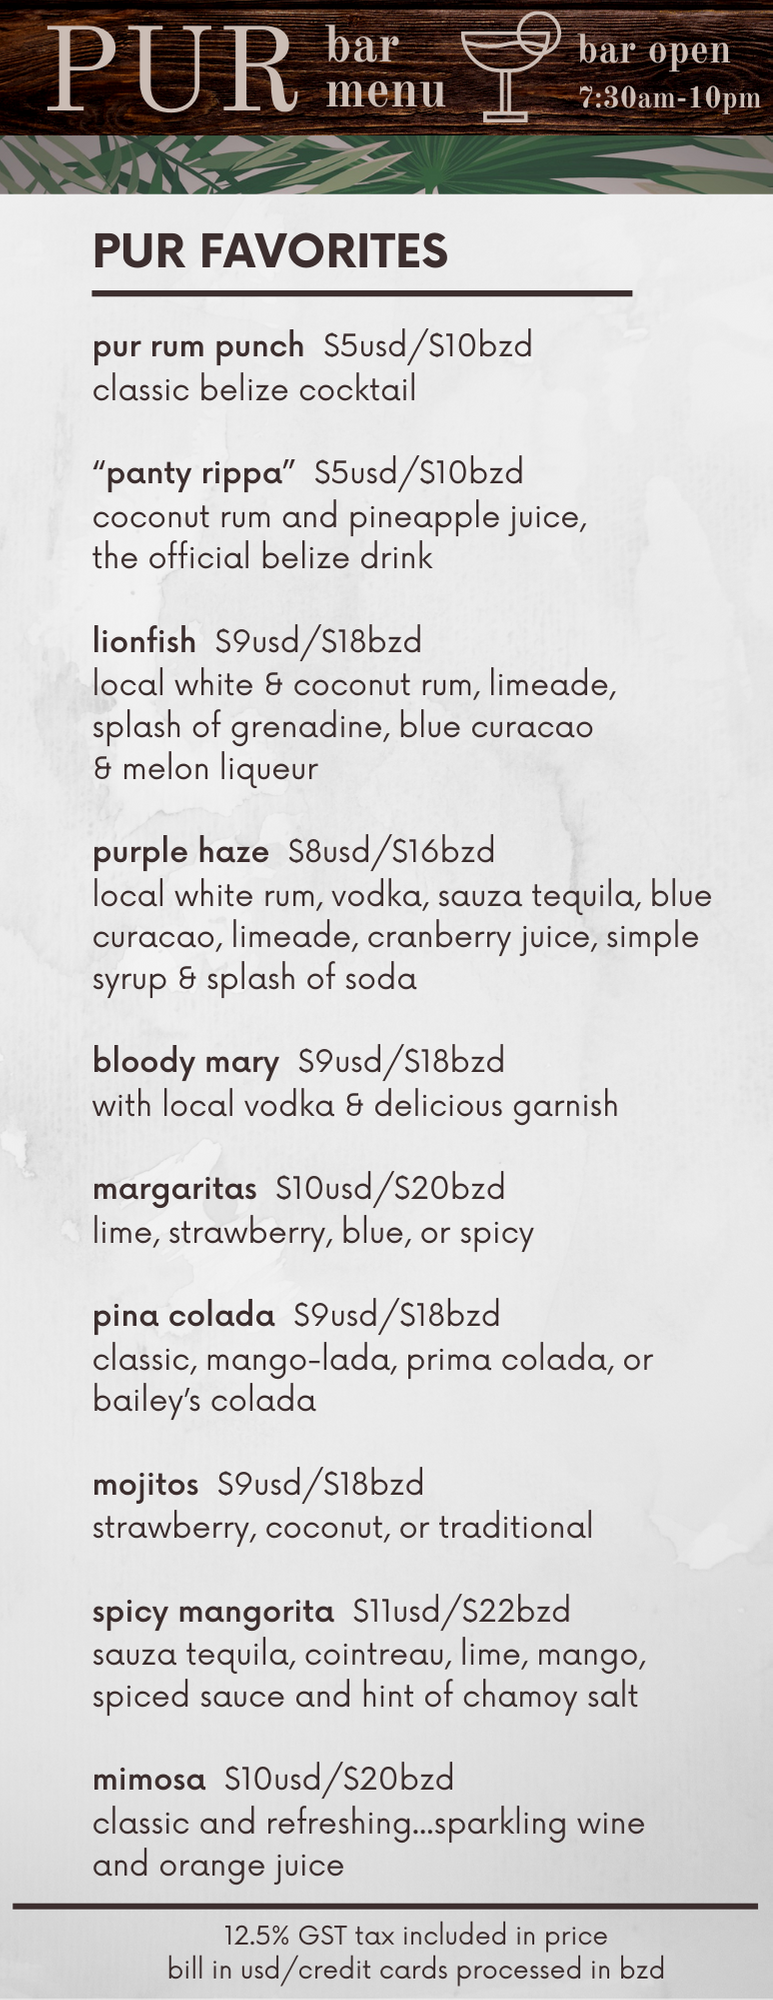 PUR bar menu (6).png